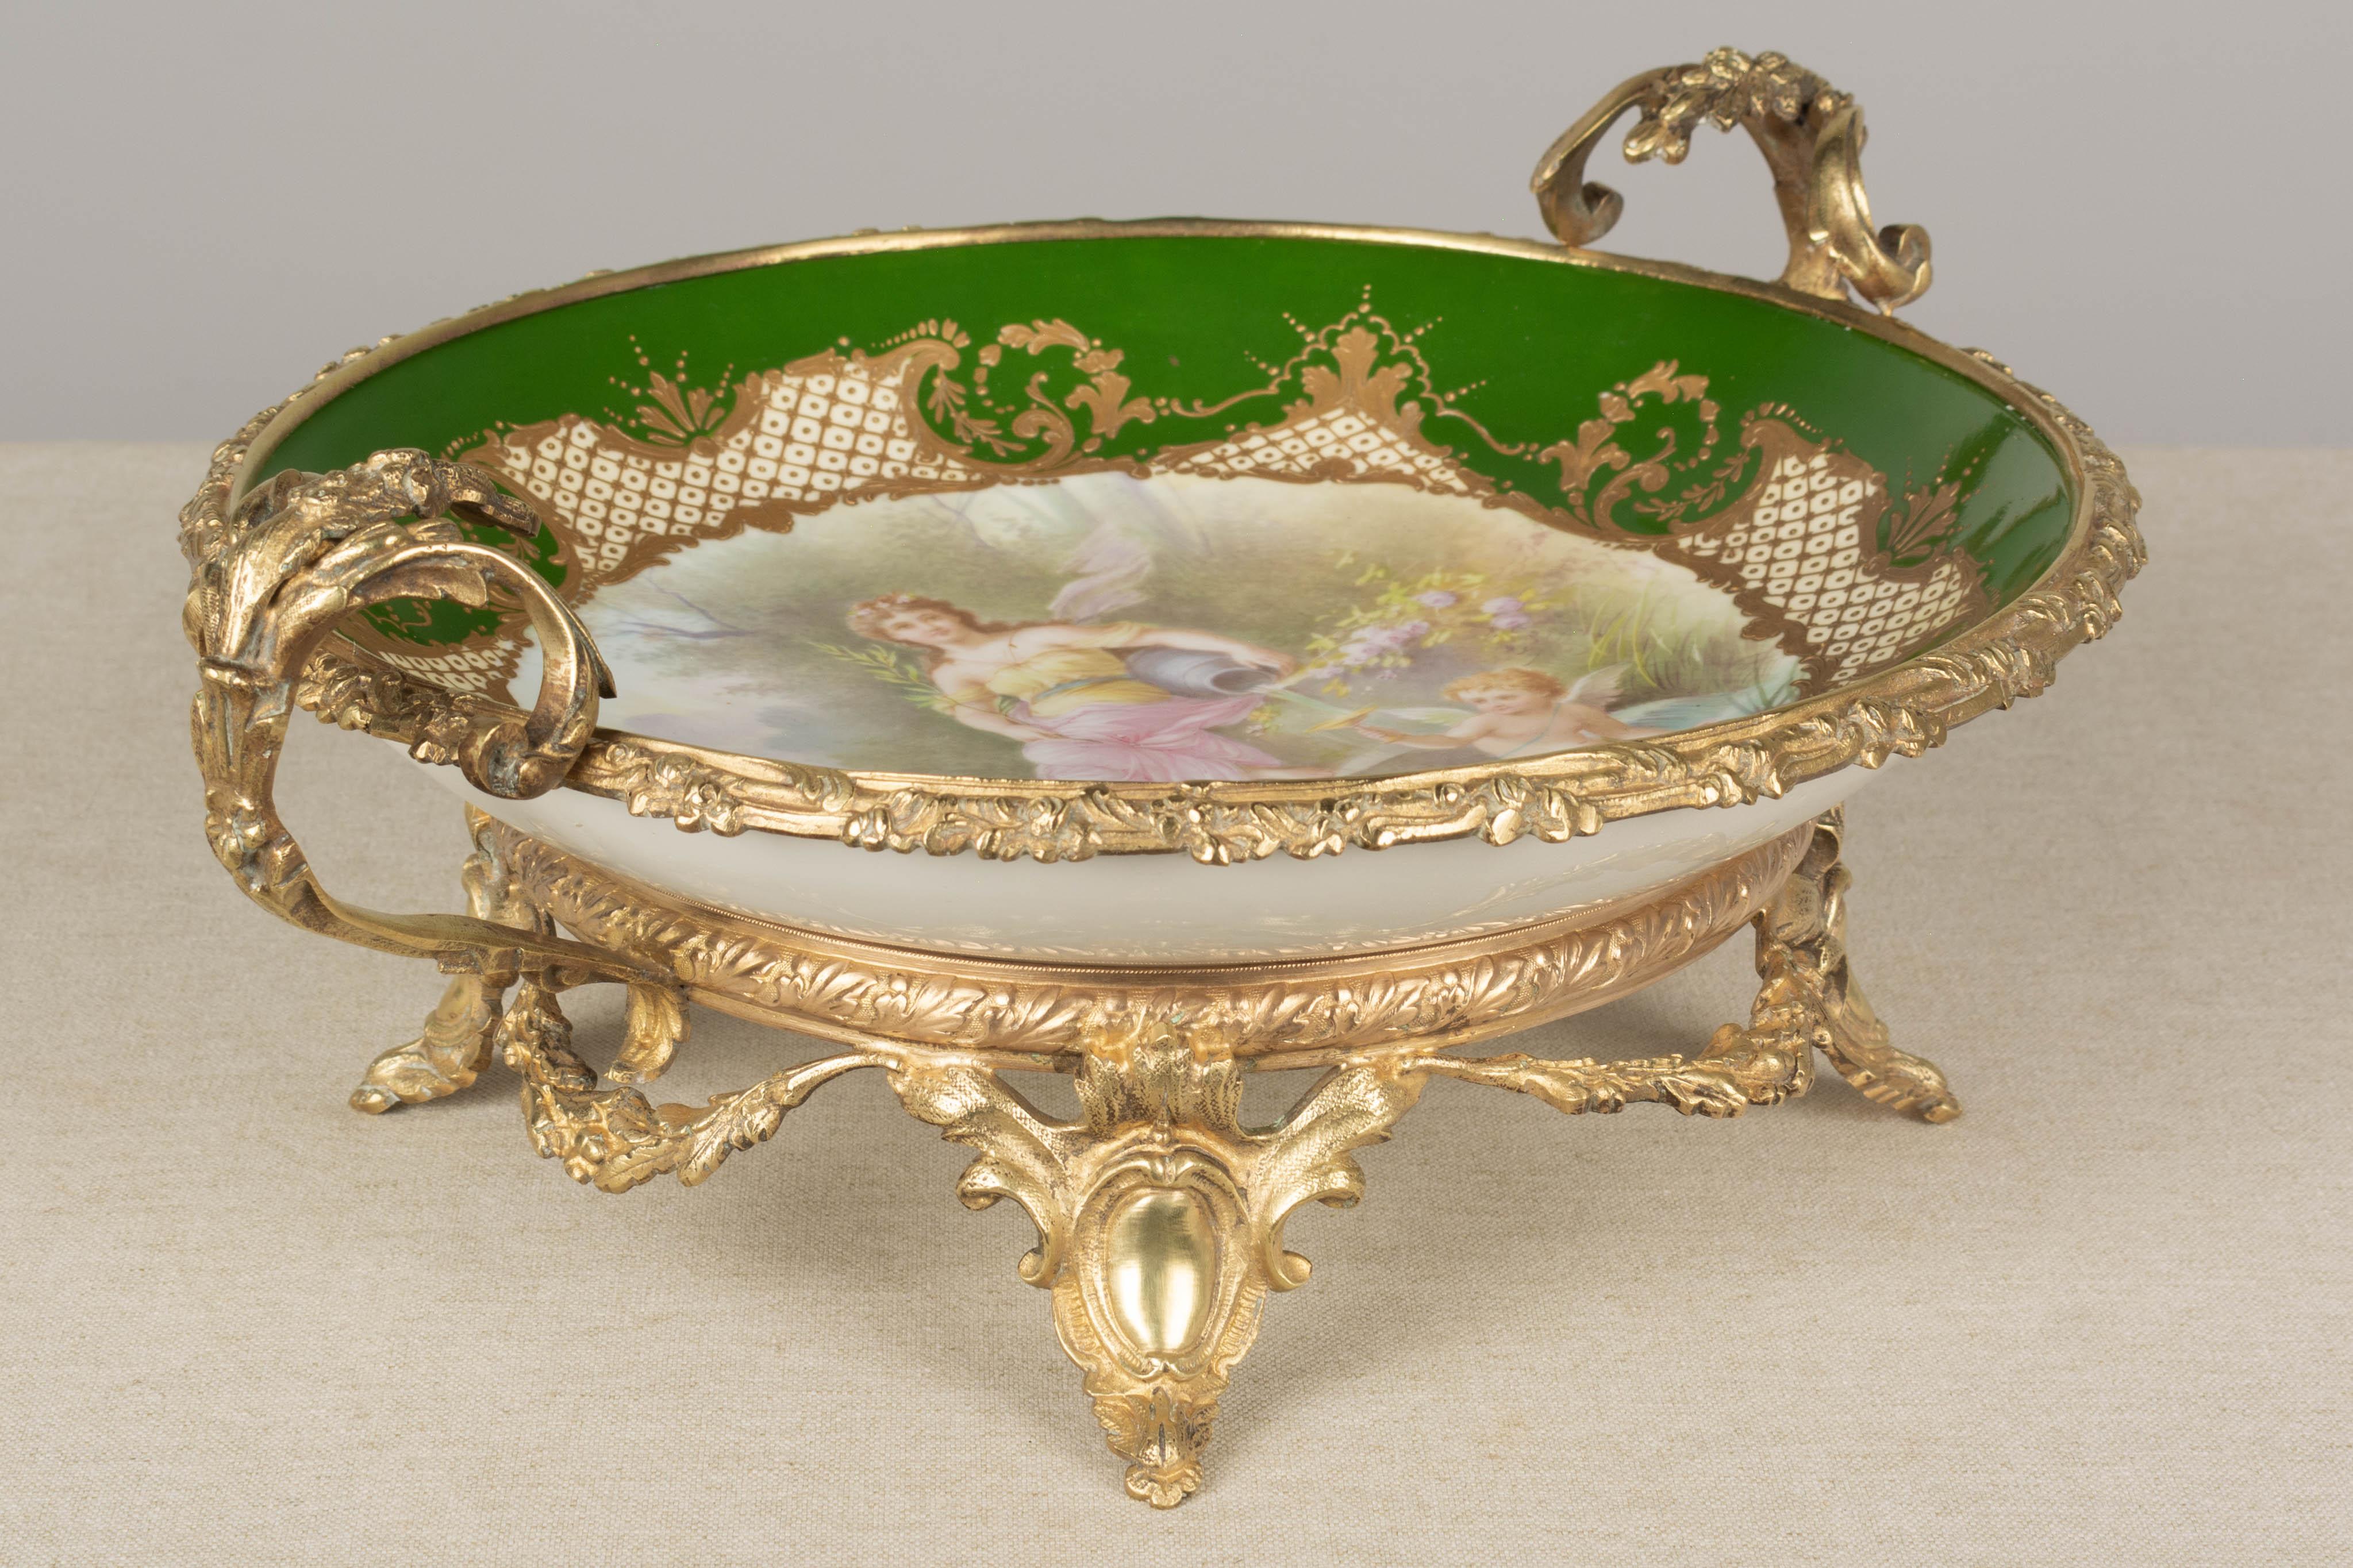 19th Century French Ormolu Sèvres Porcelain Centerpiece Bowl For Sale 1